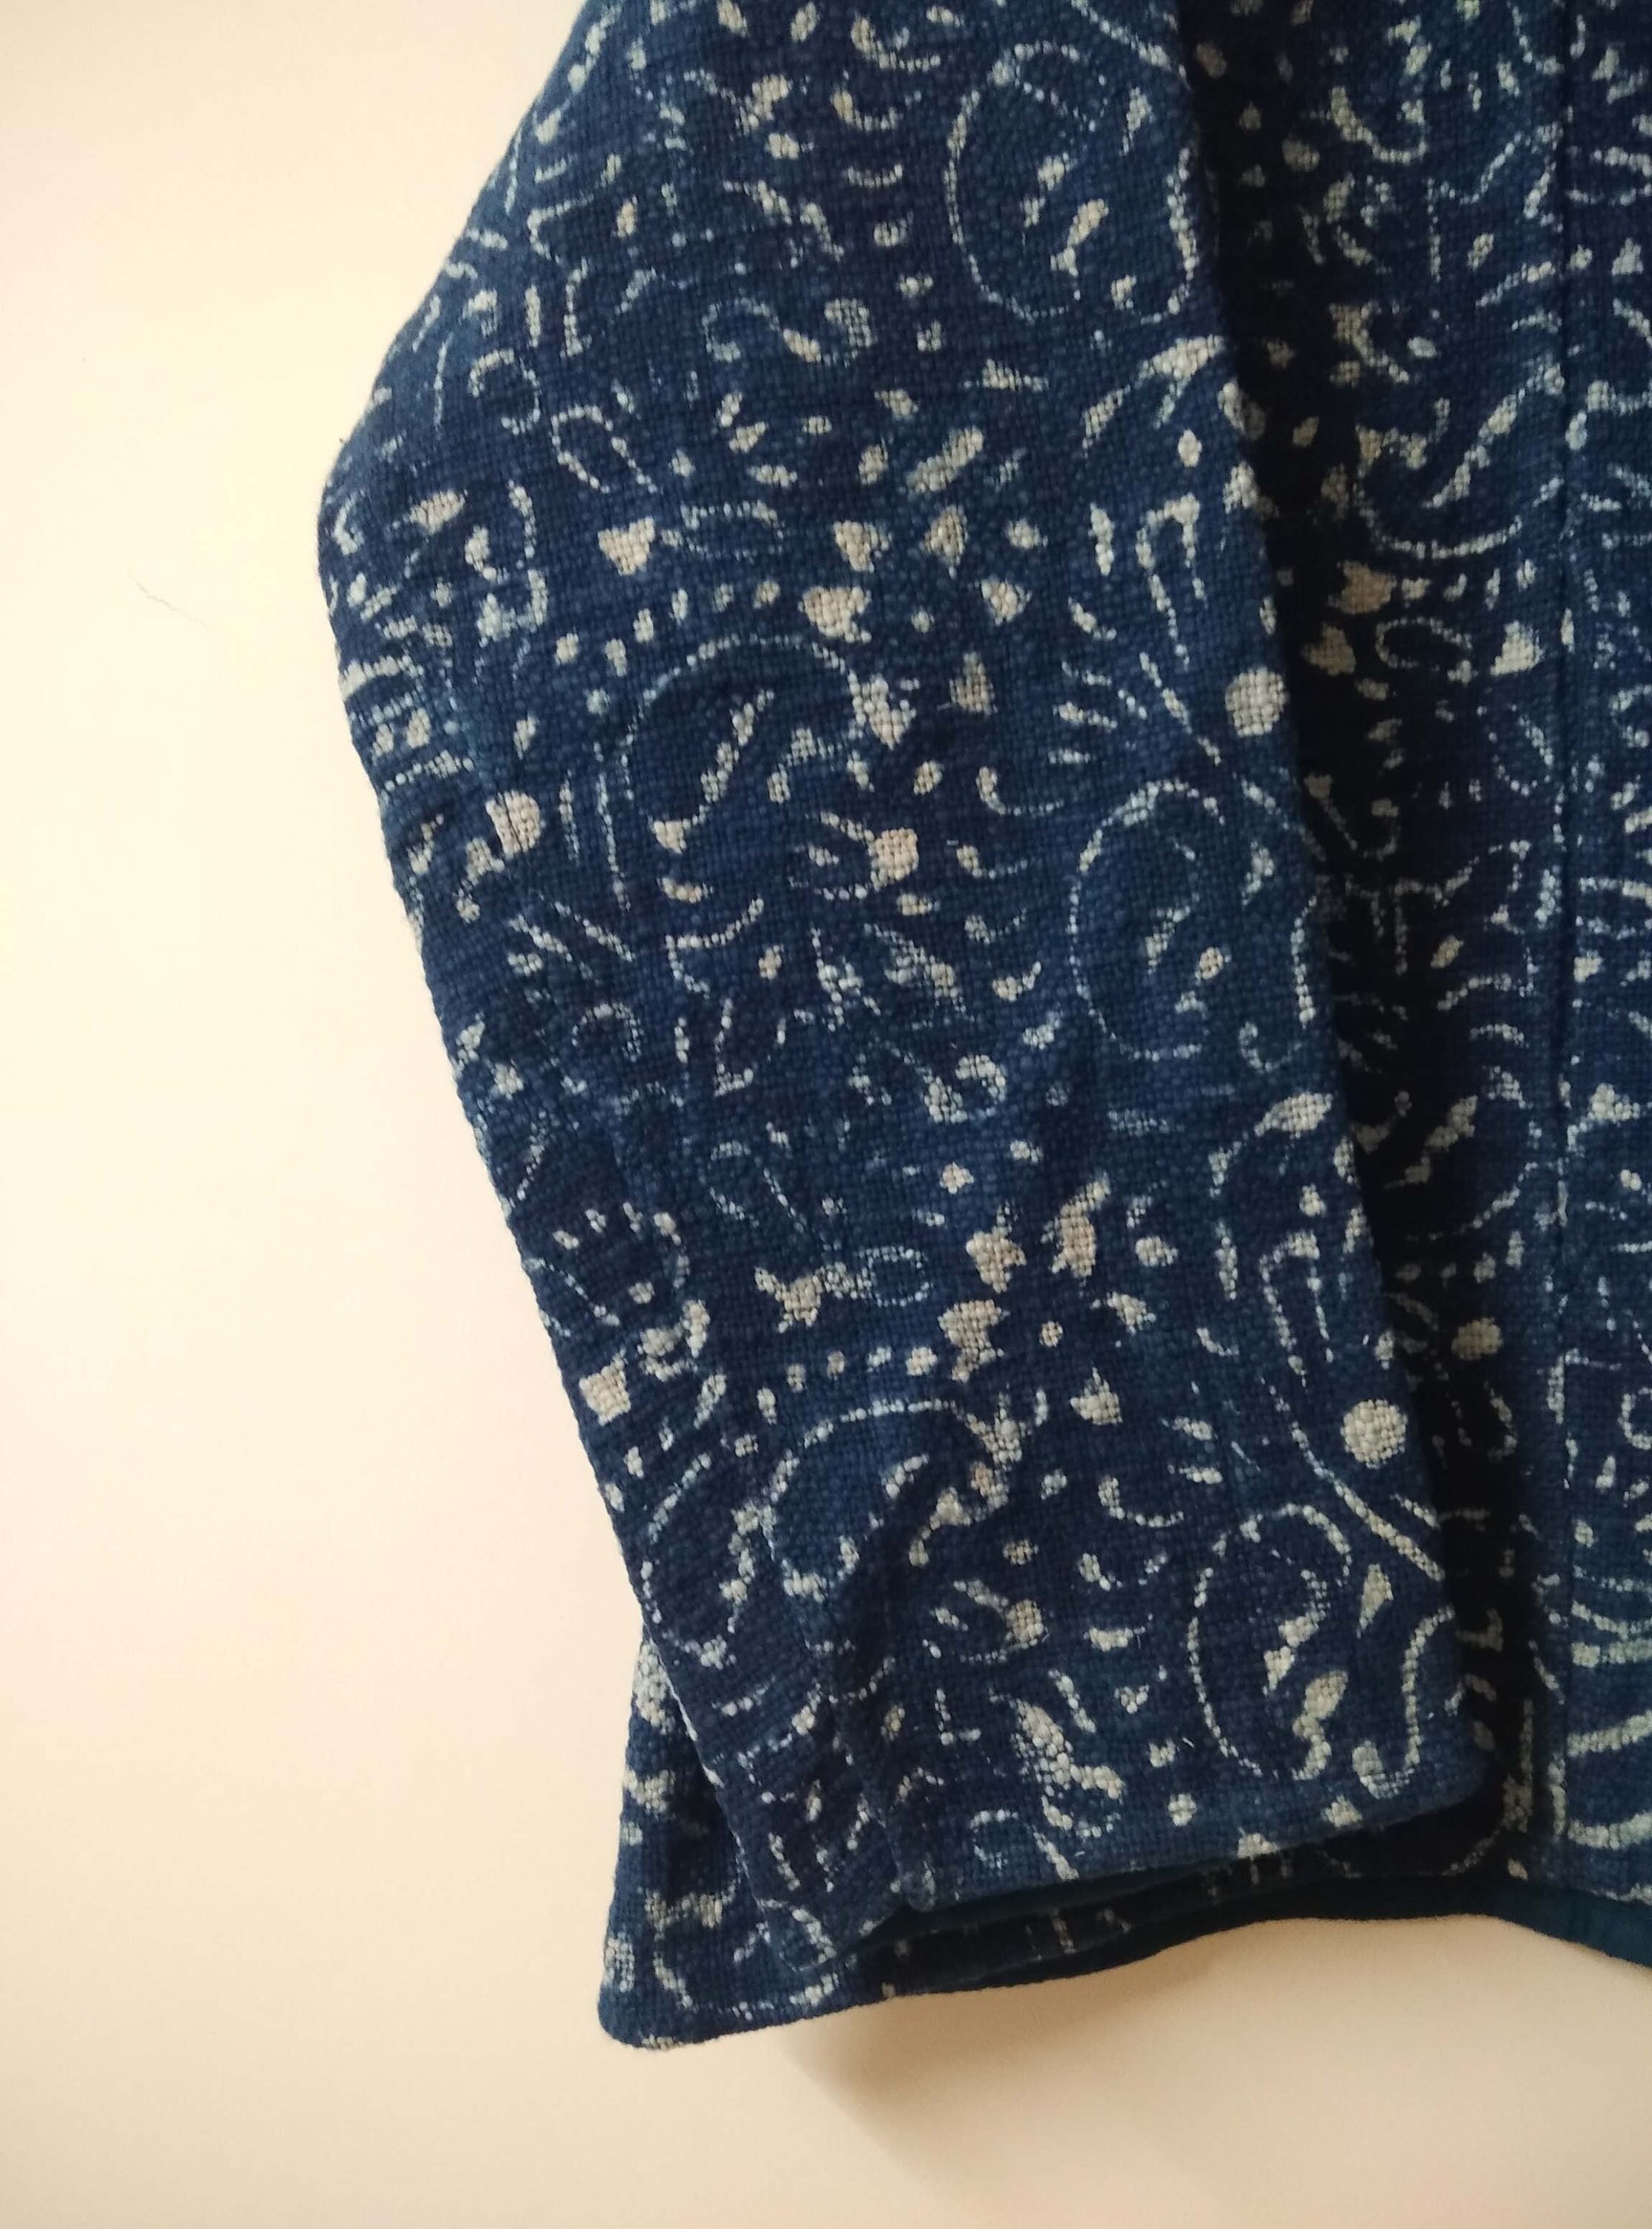 Indigo Blue Kantha Jacket Quilted Kantha Jacket Indian - Etsy